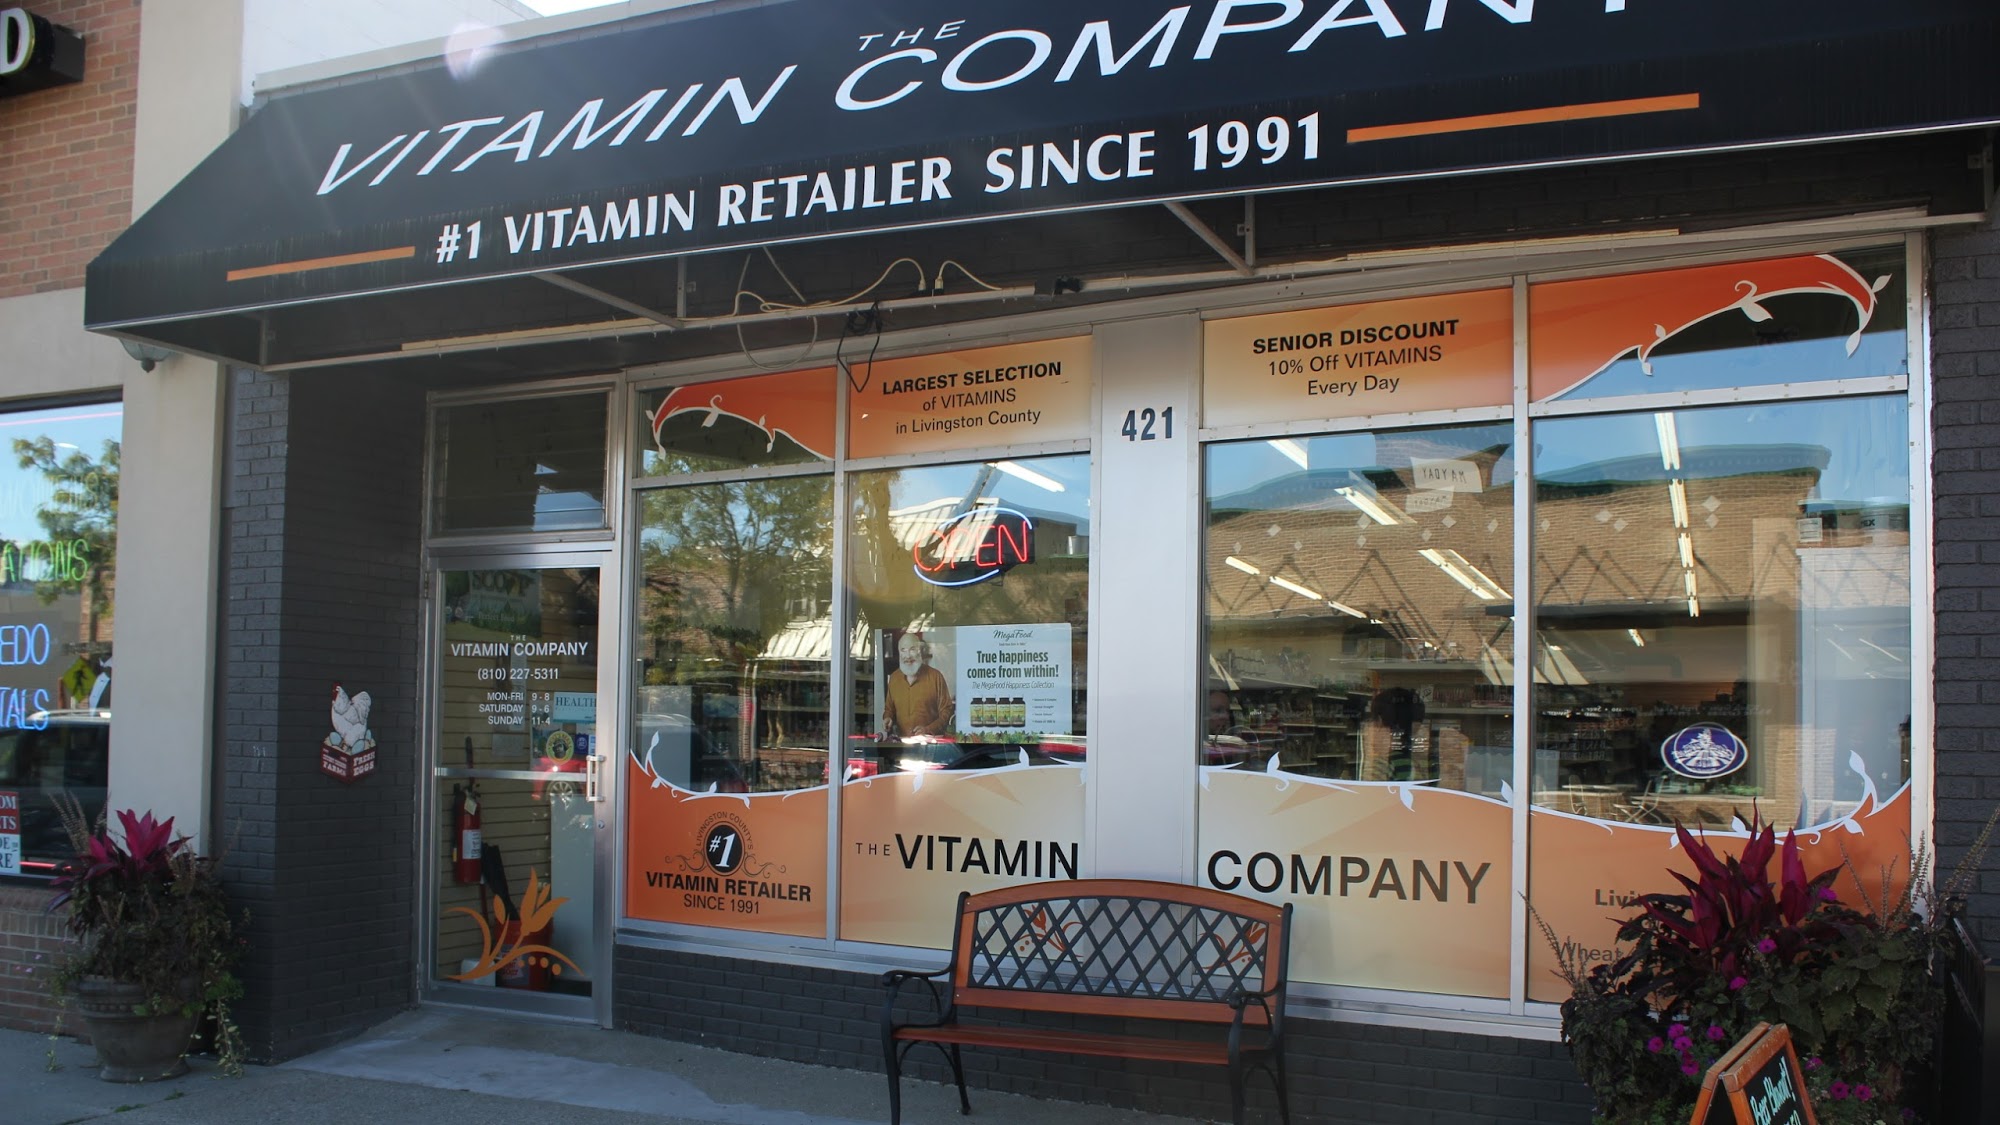 The Vitamin Company